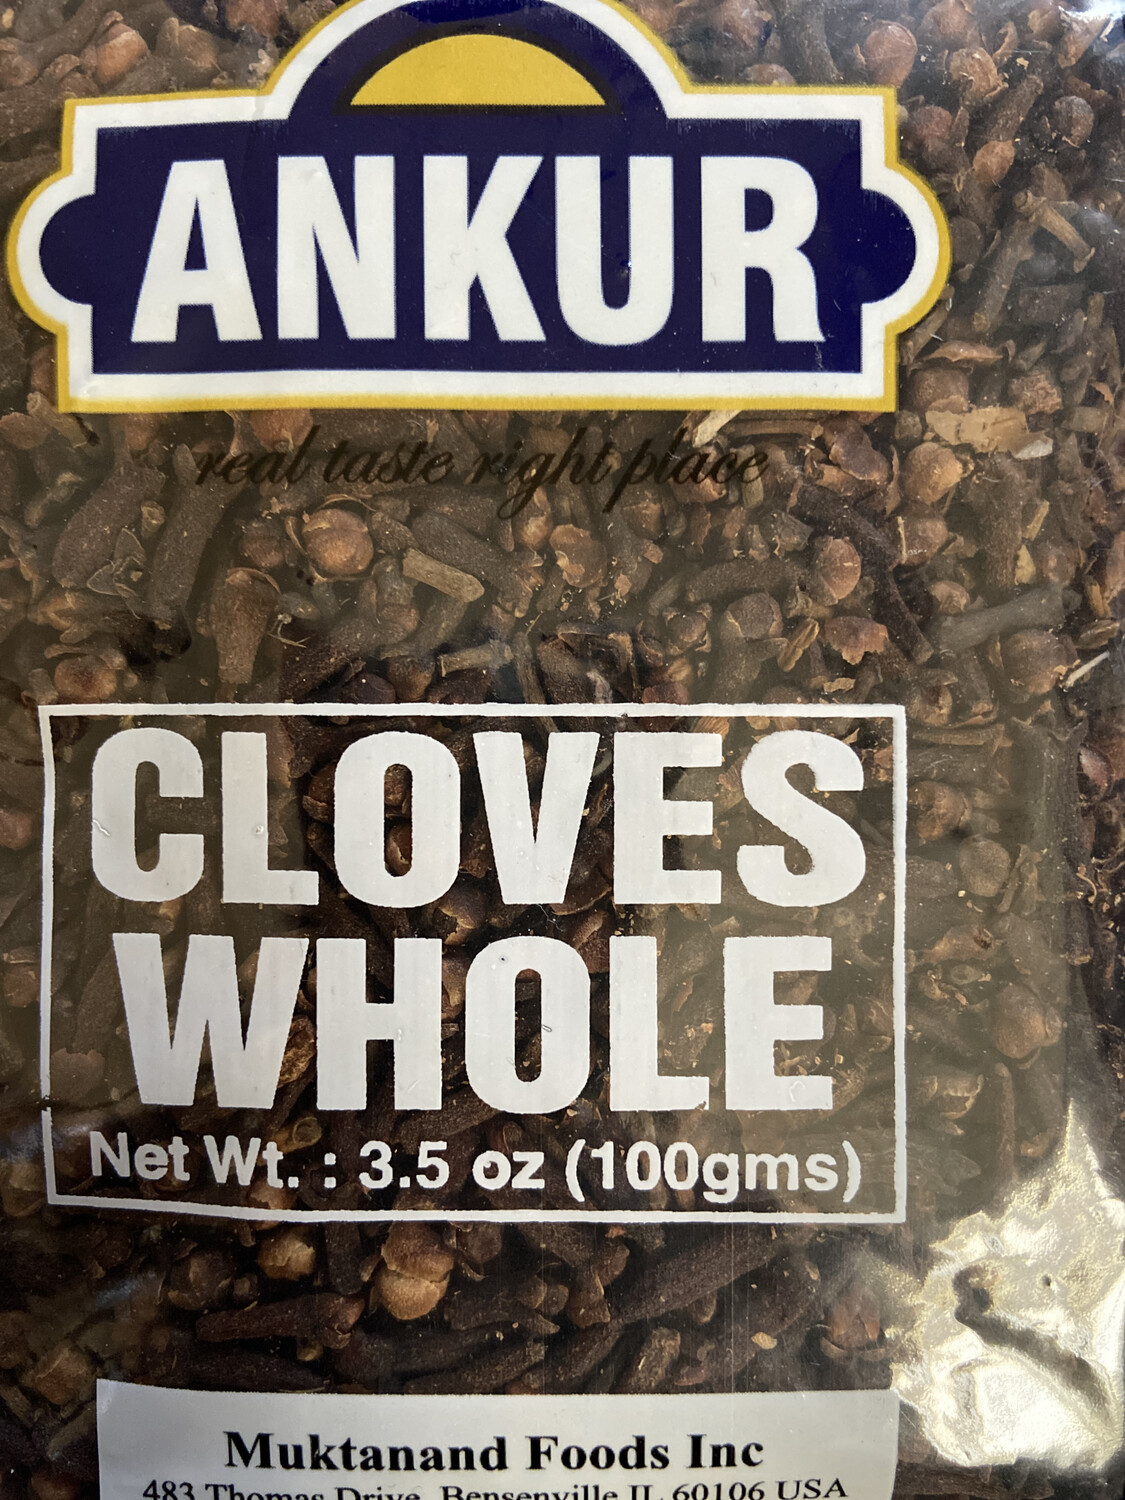 Ankur Cloves Whole 100g